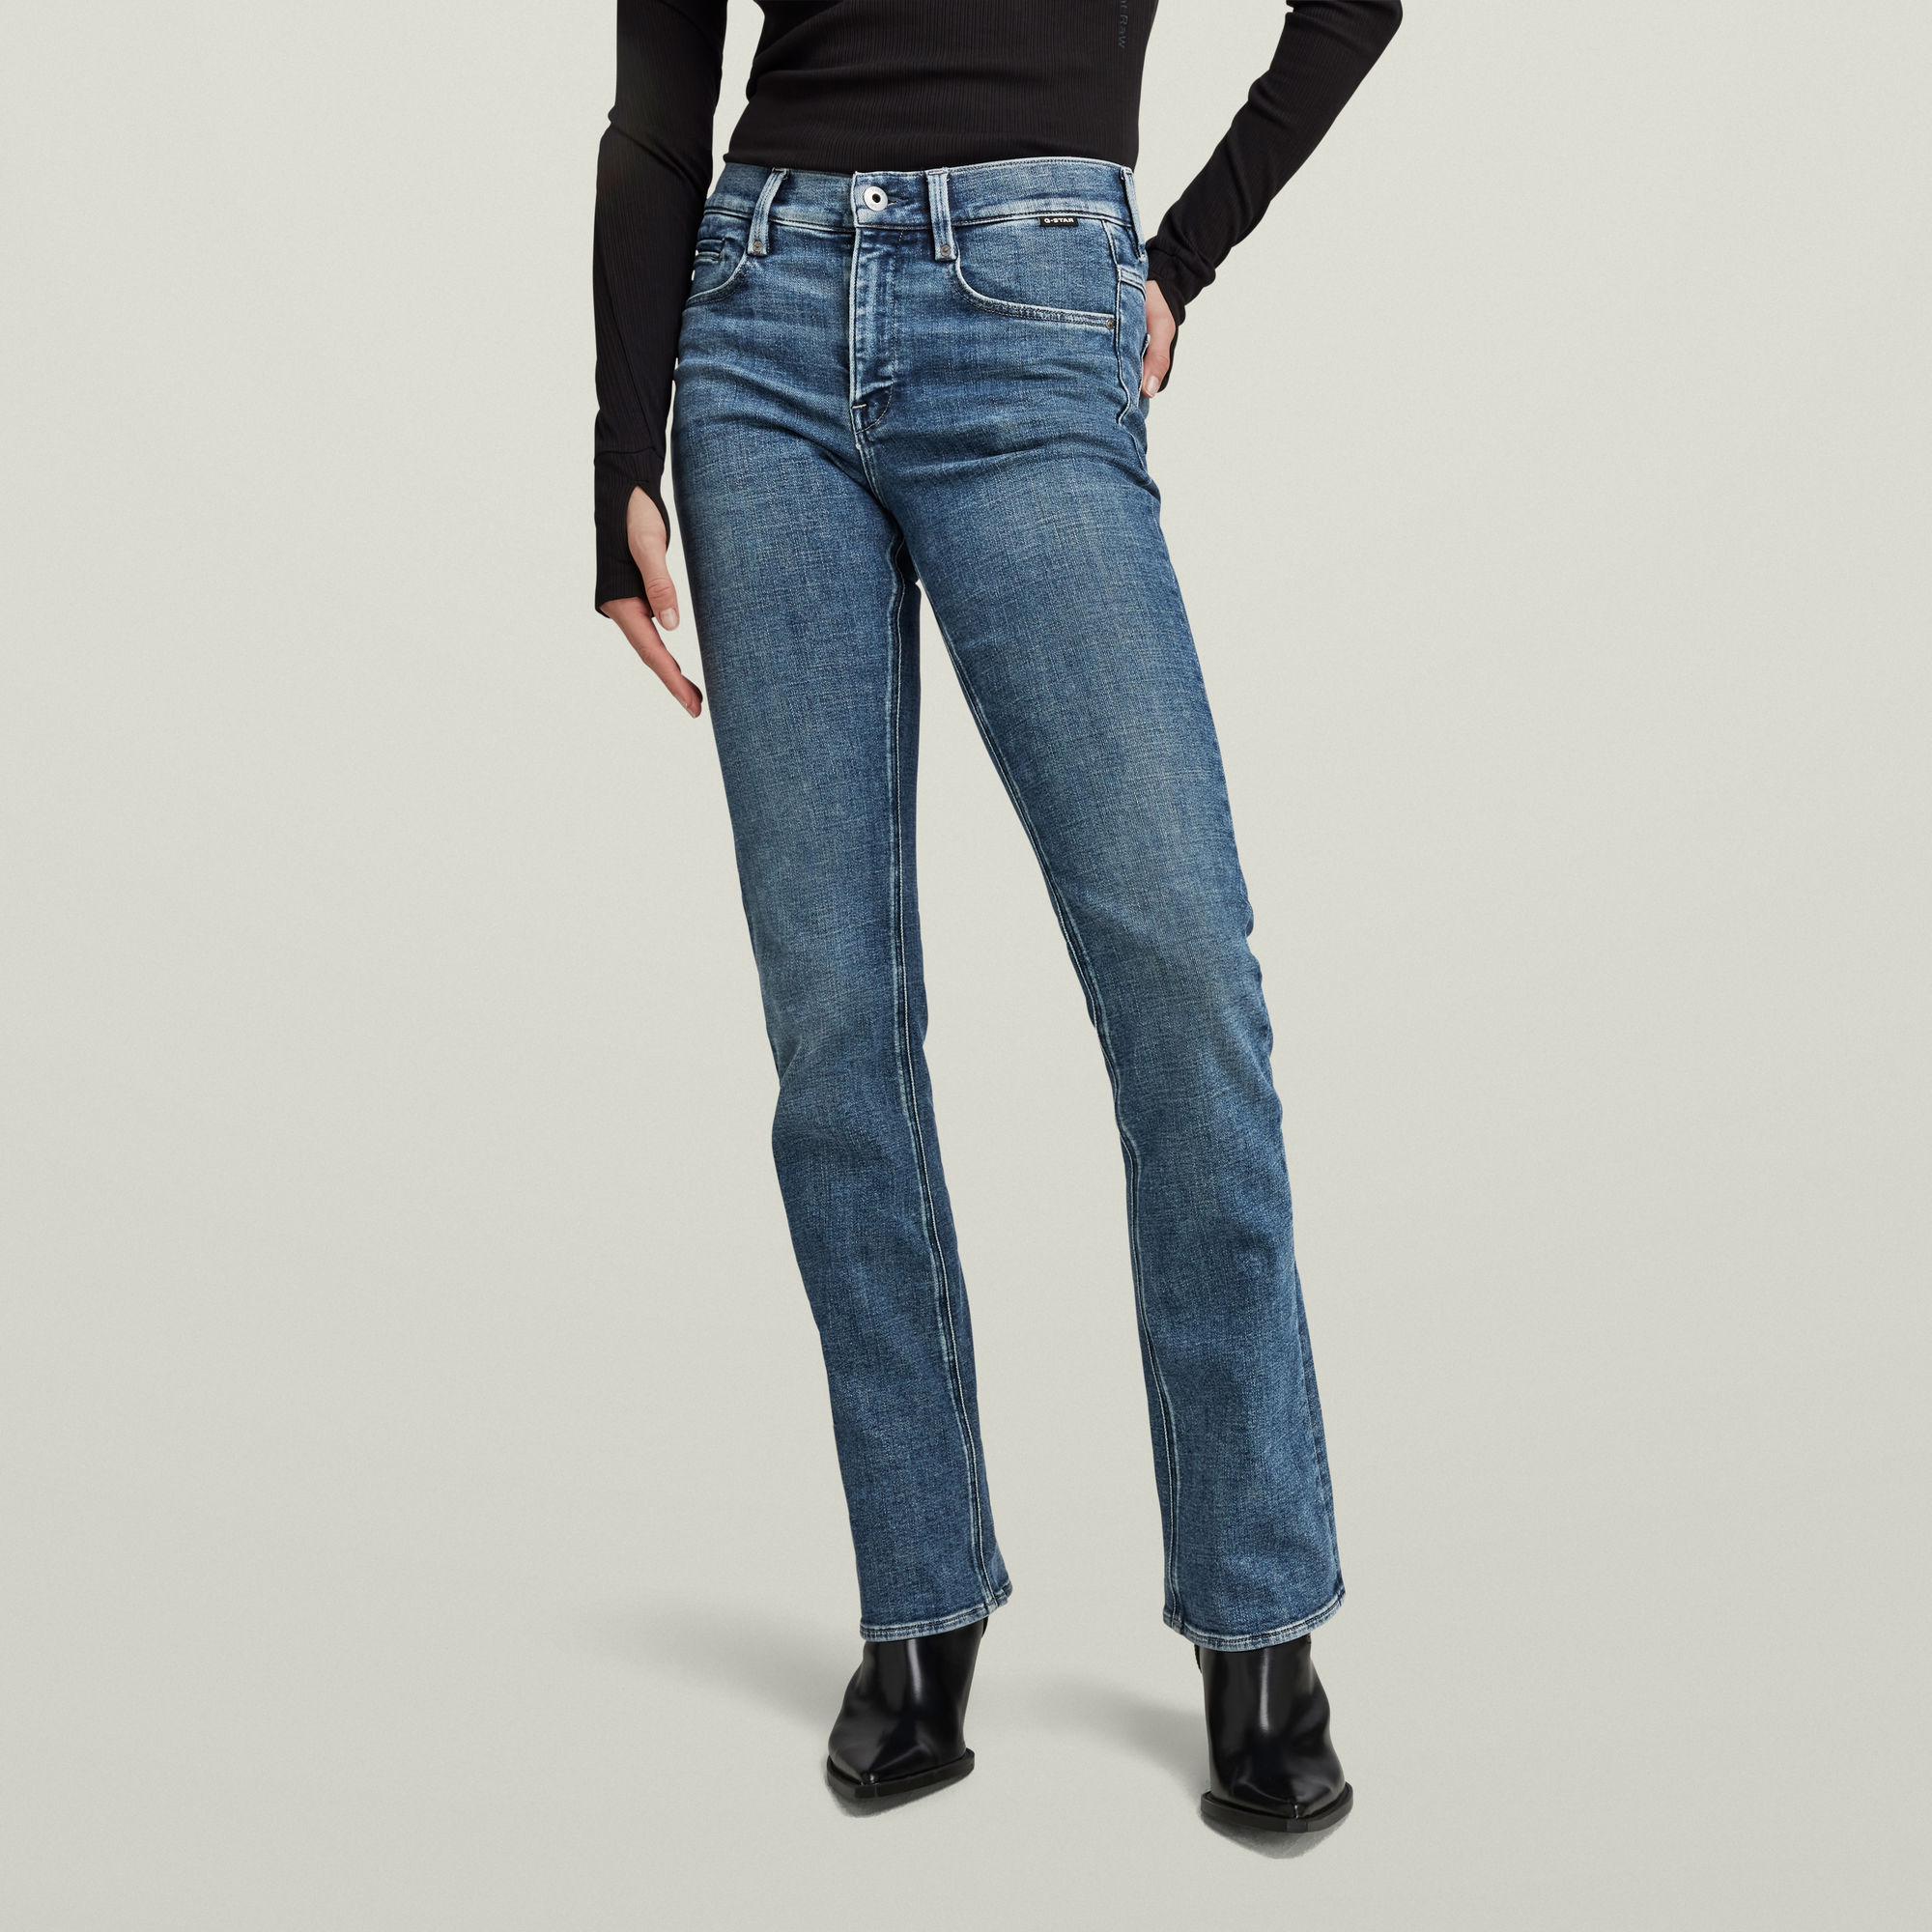 

Noxer Bootcut Jeans - Medium blue - Women